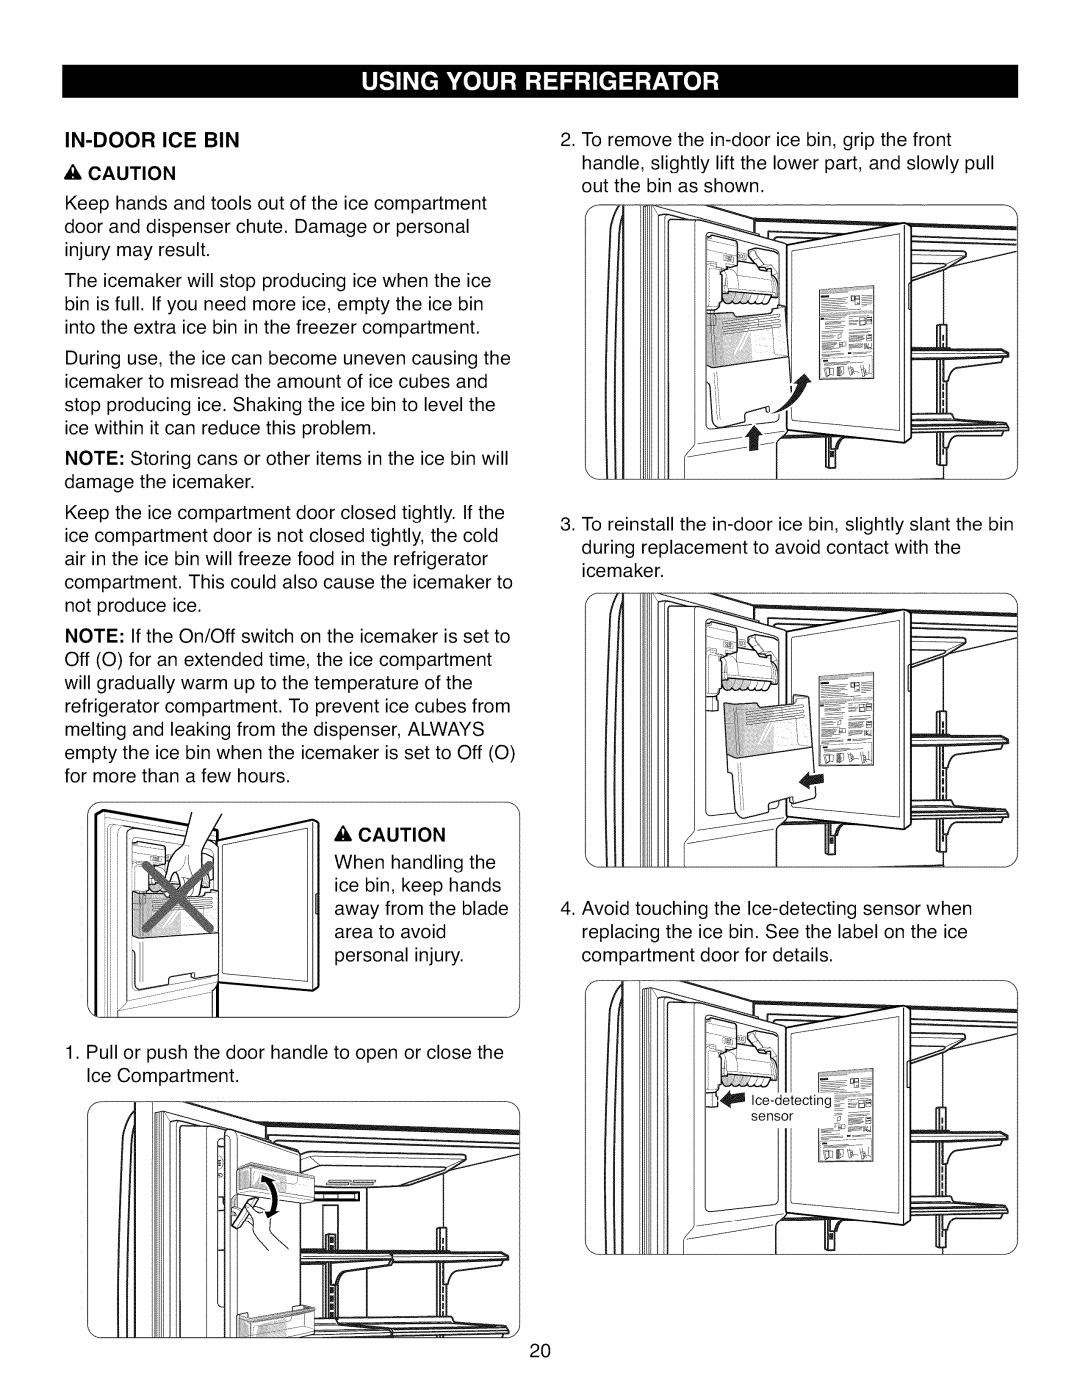 Kenmore 795.7105 manual In-Doorice Bin, _, Caution 